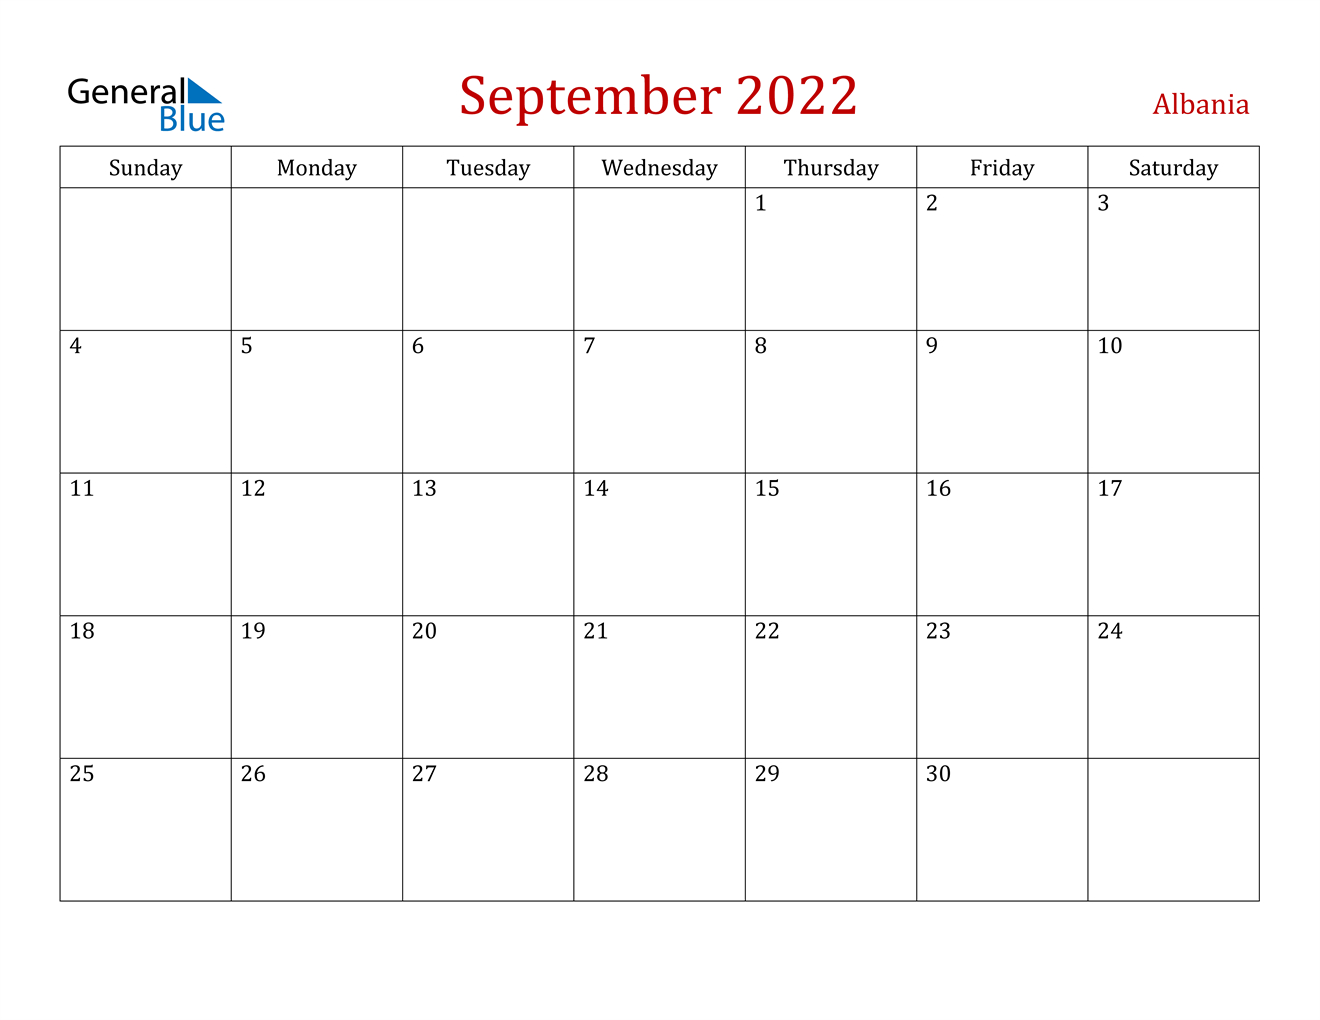 September 2022 Calendar - Albania